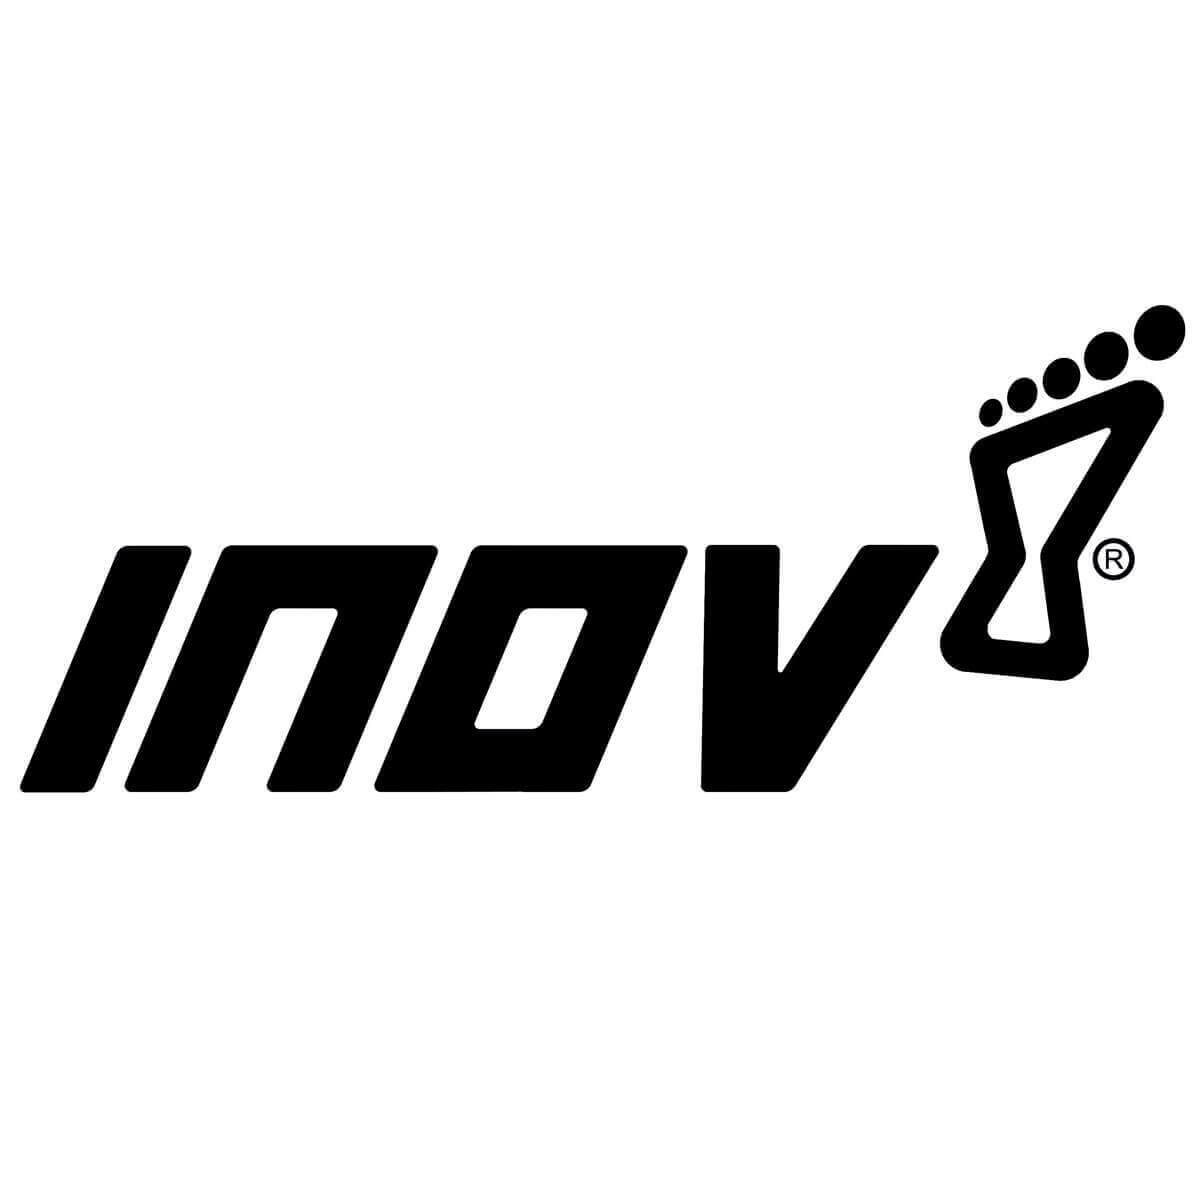 Inov-8 Logo - Inov 8 Shoe Reviews & More!. Trail & Kale